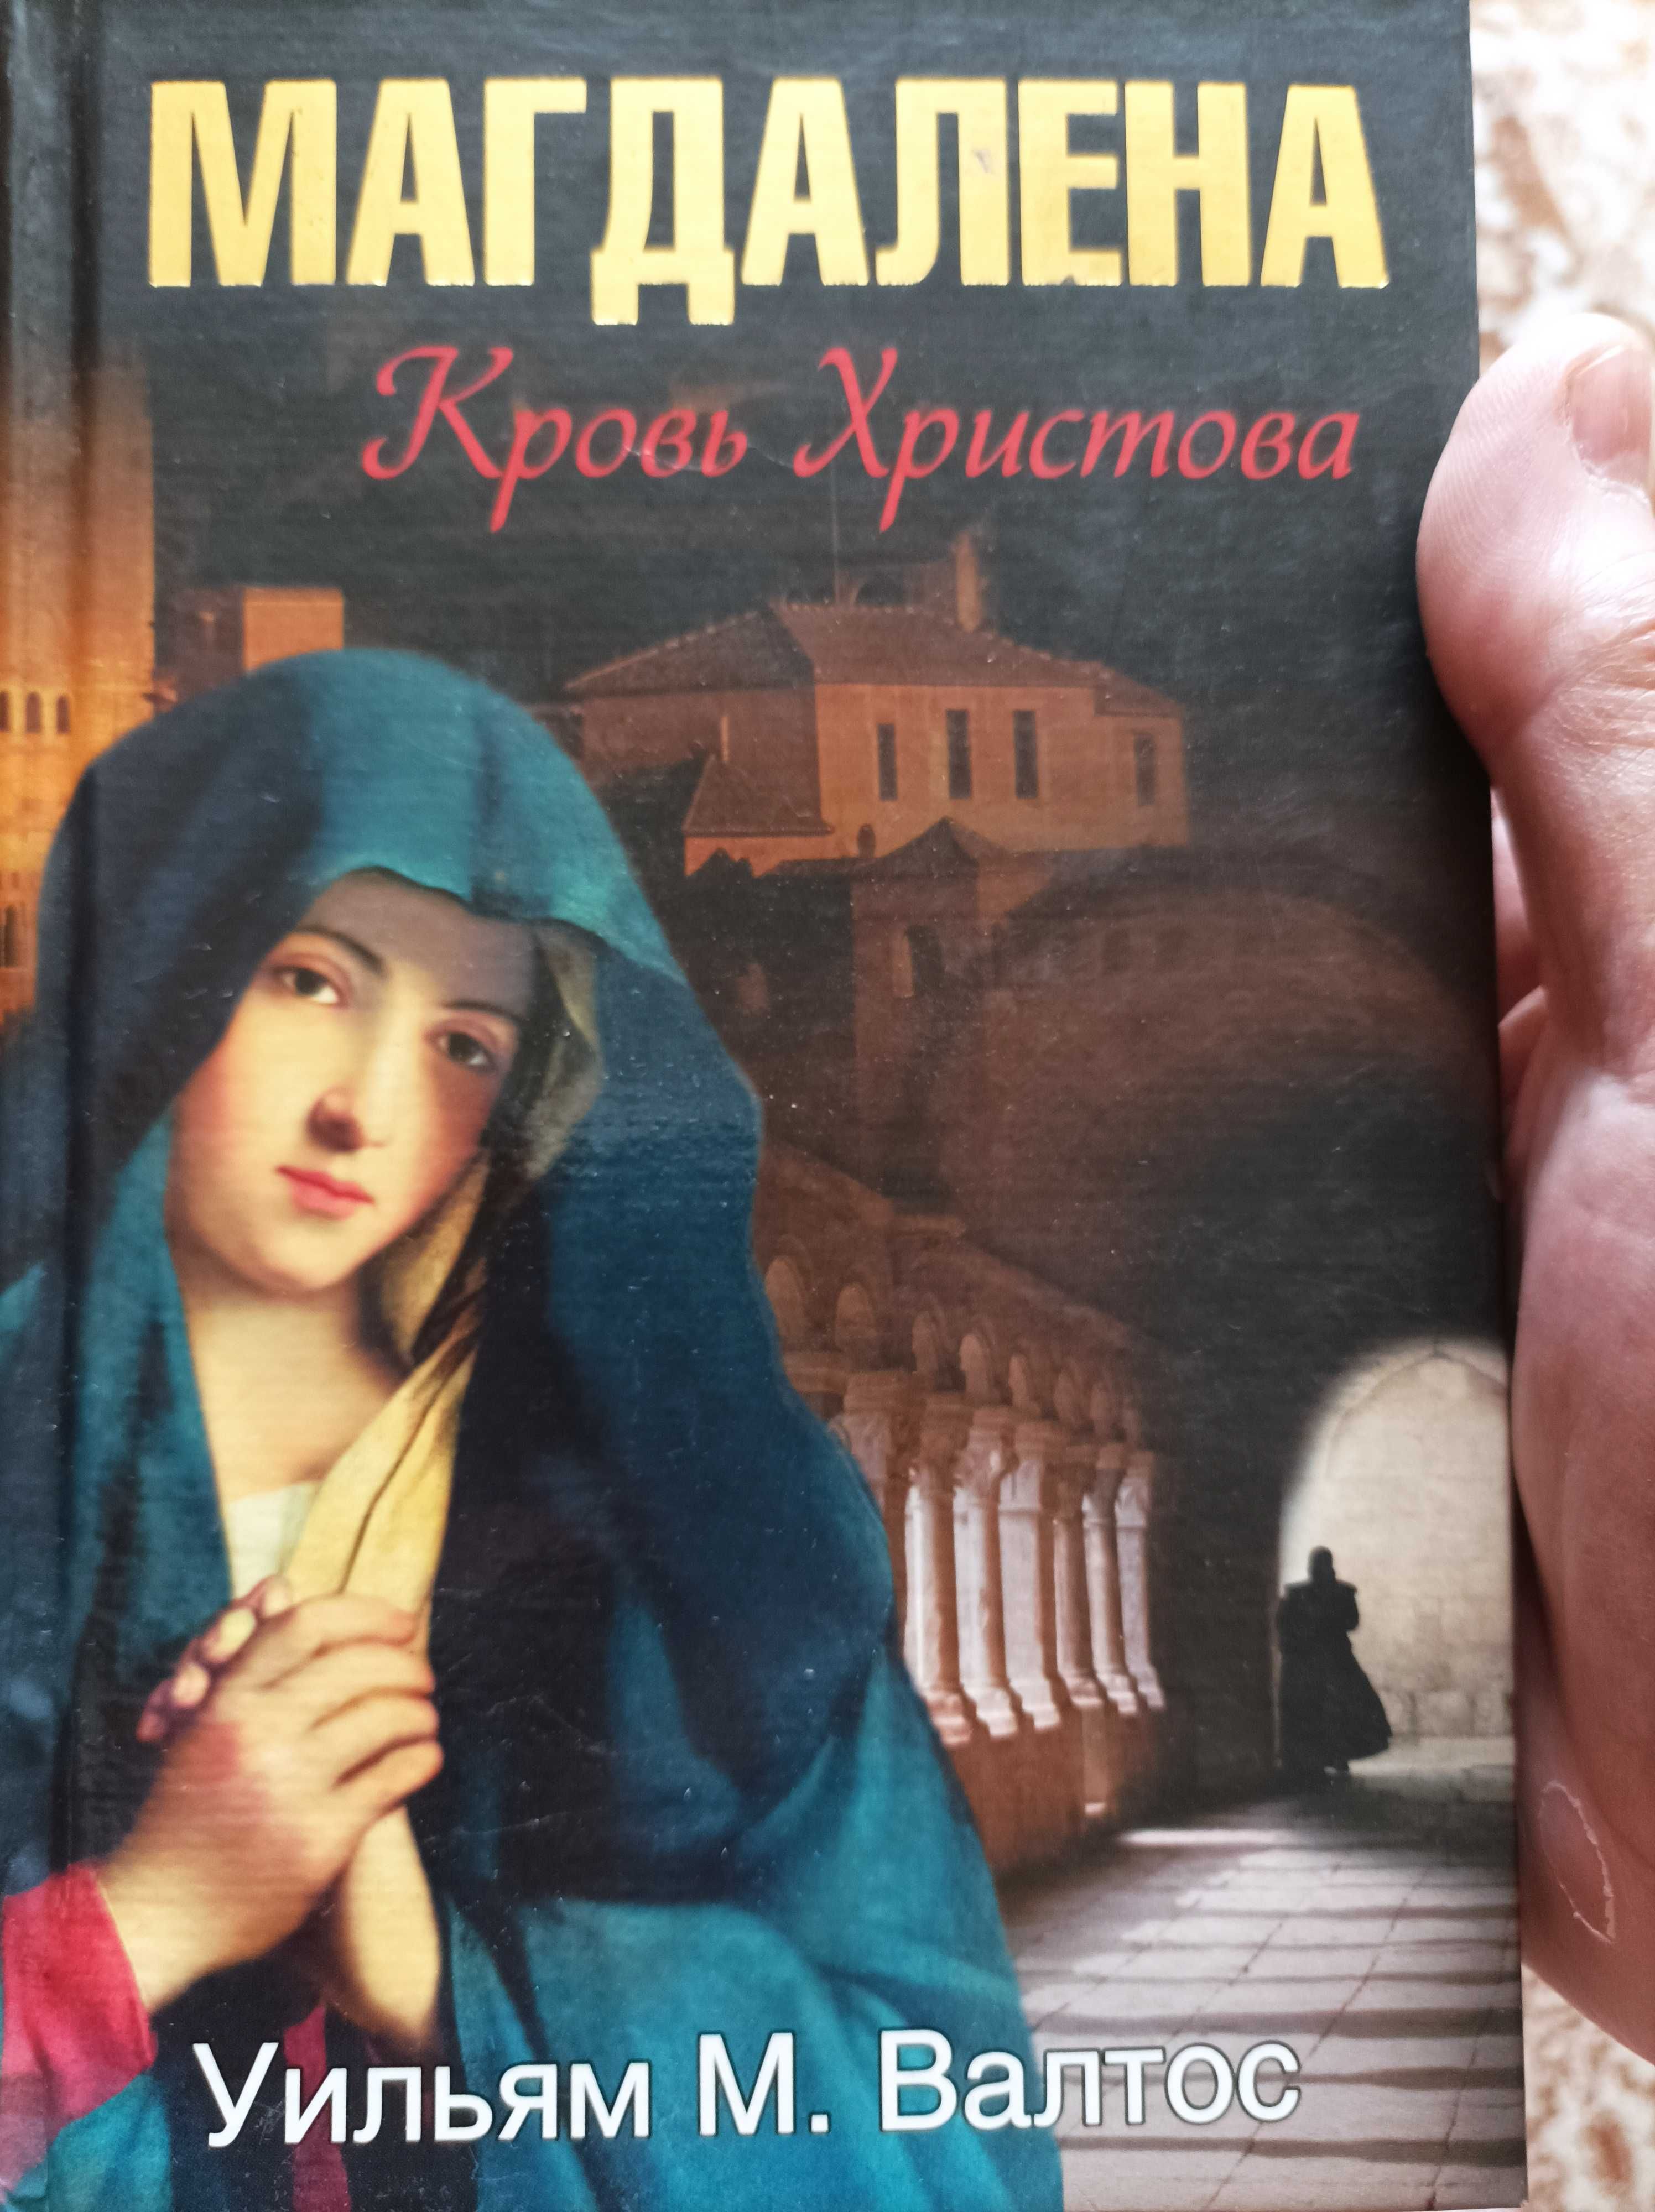 Продам интересную книгу Магдалена Кровь Христова